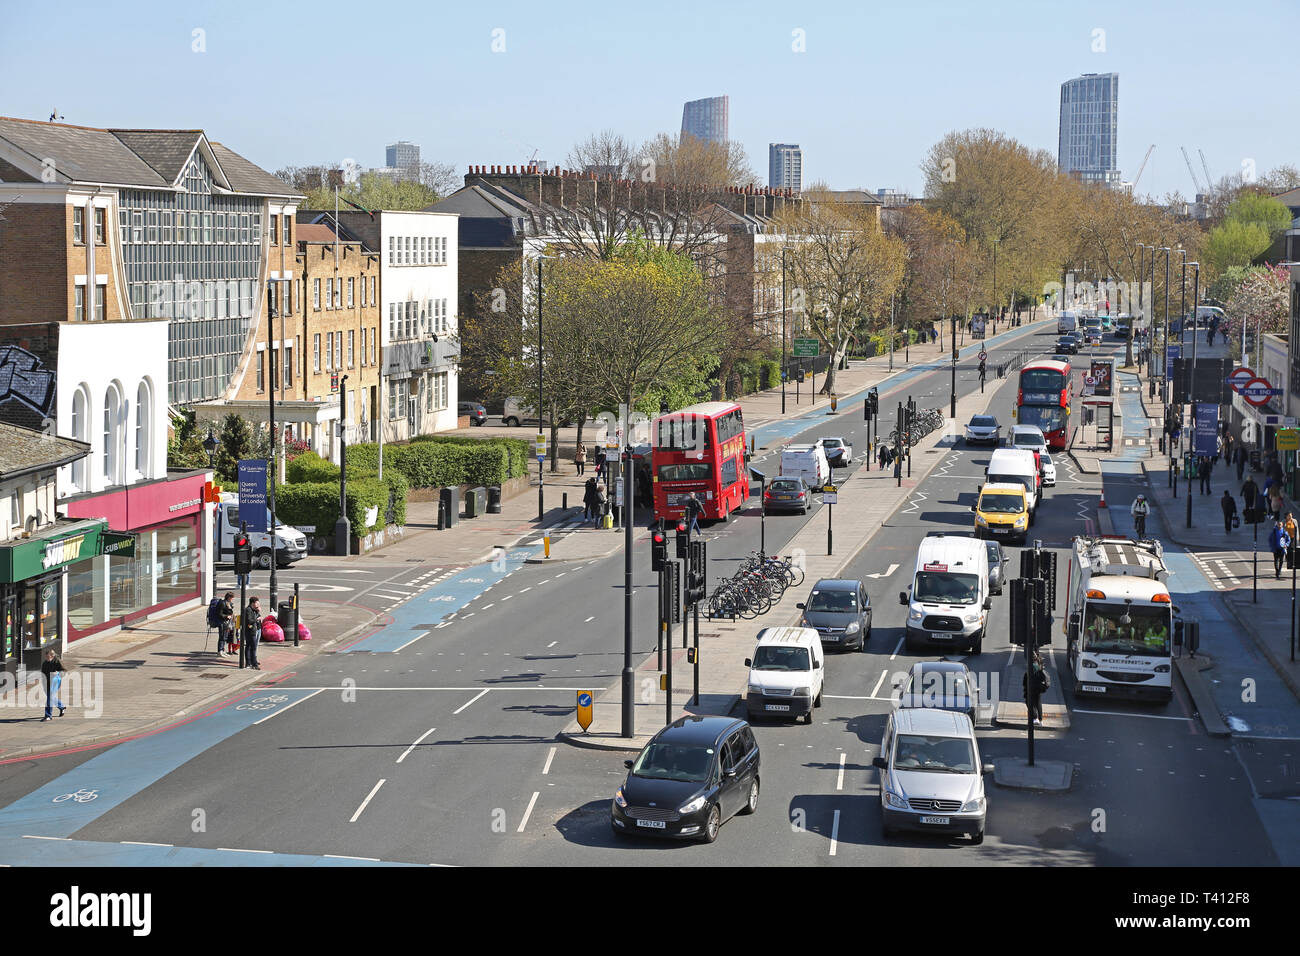 Vollständig integrierte Radwege auf der Mile End Road/Bow Road im Londoner East End. Zeigt Fahrradwege, Busspuren und schwimmende Bushaltestellen. Stockfoto